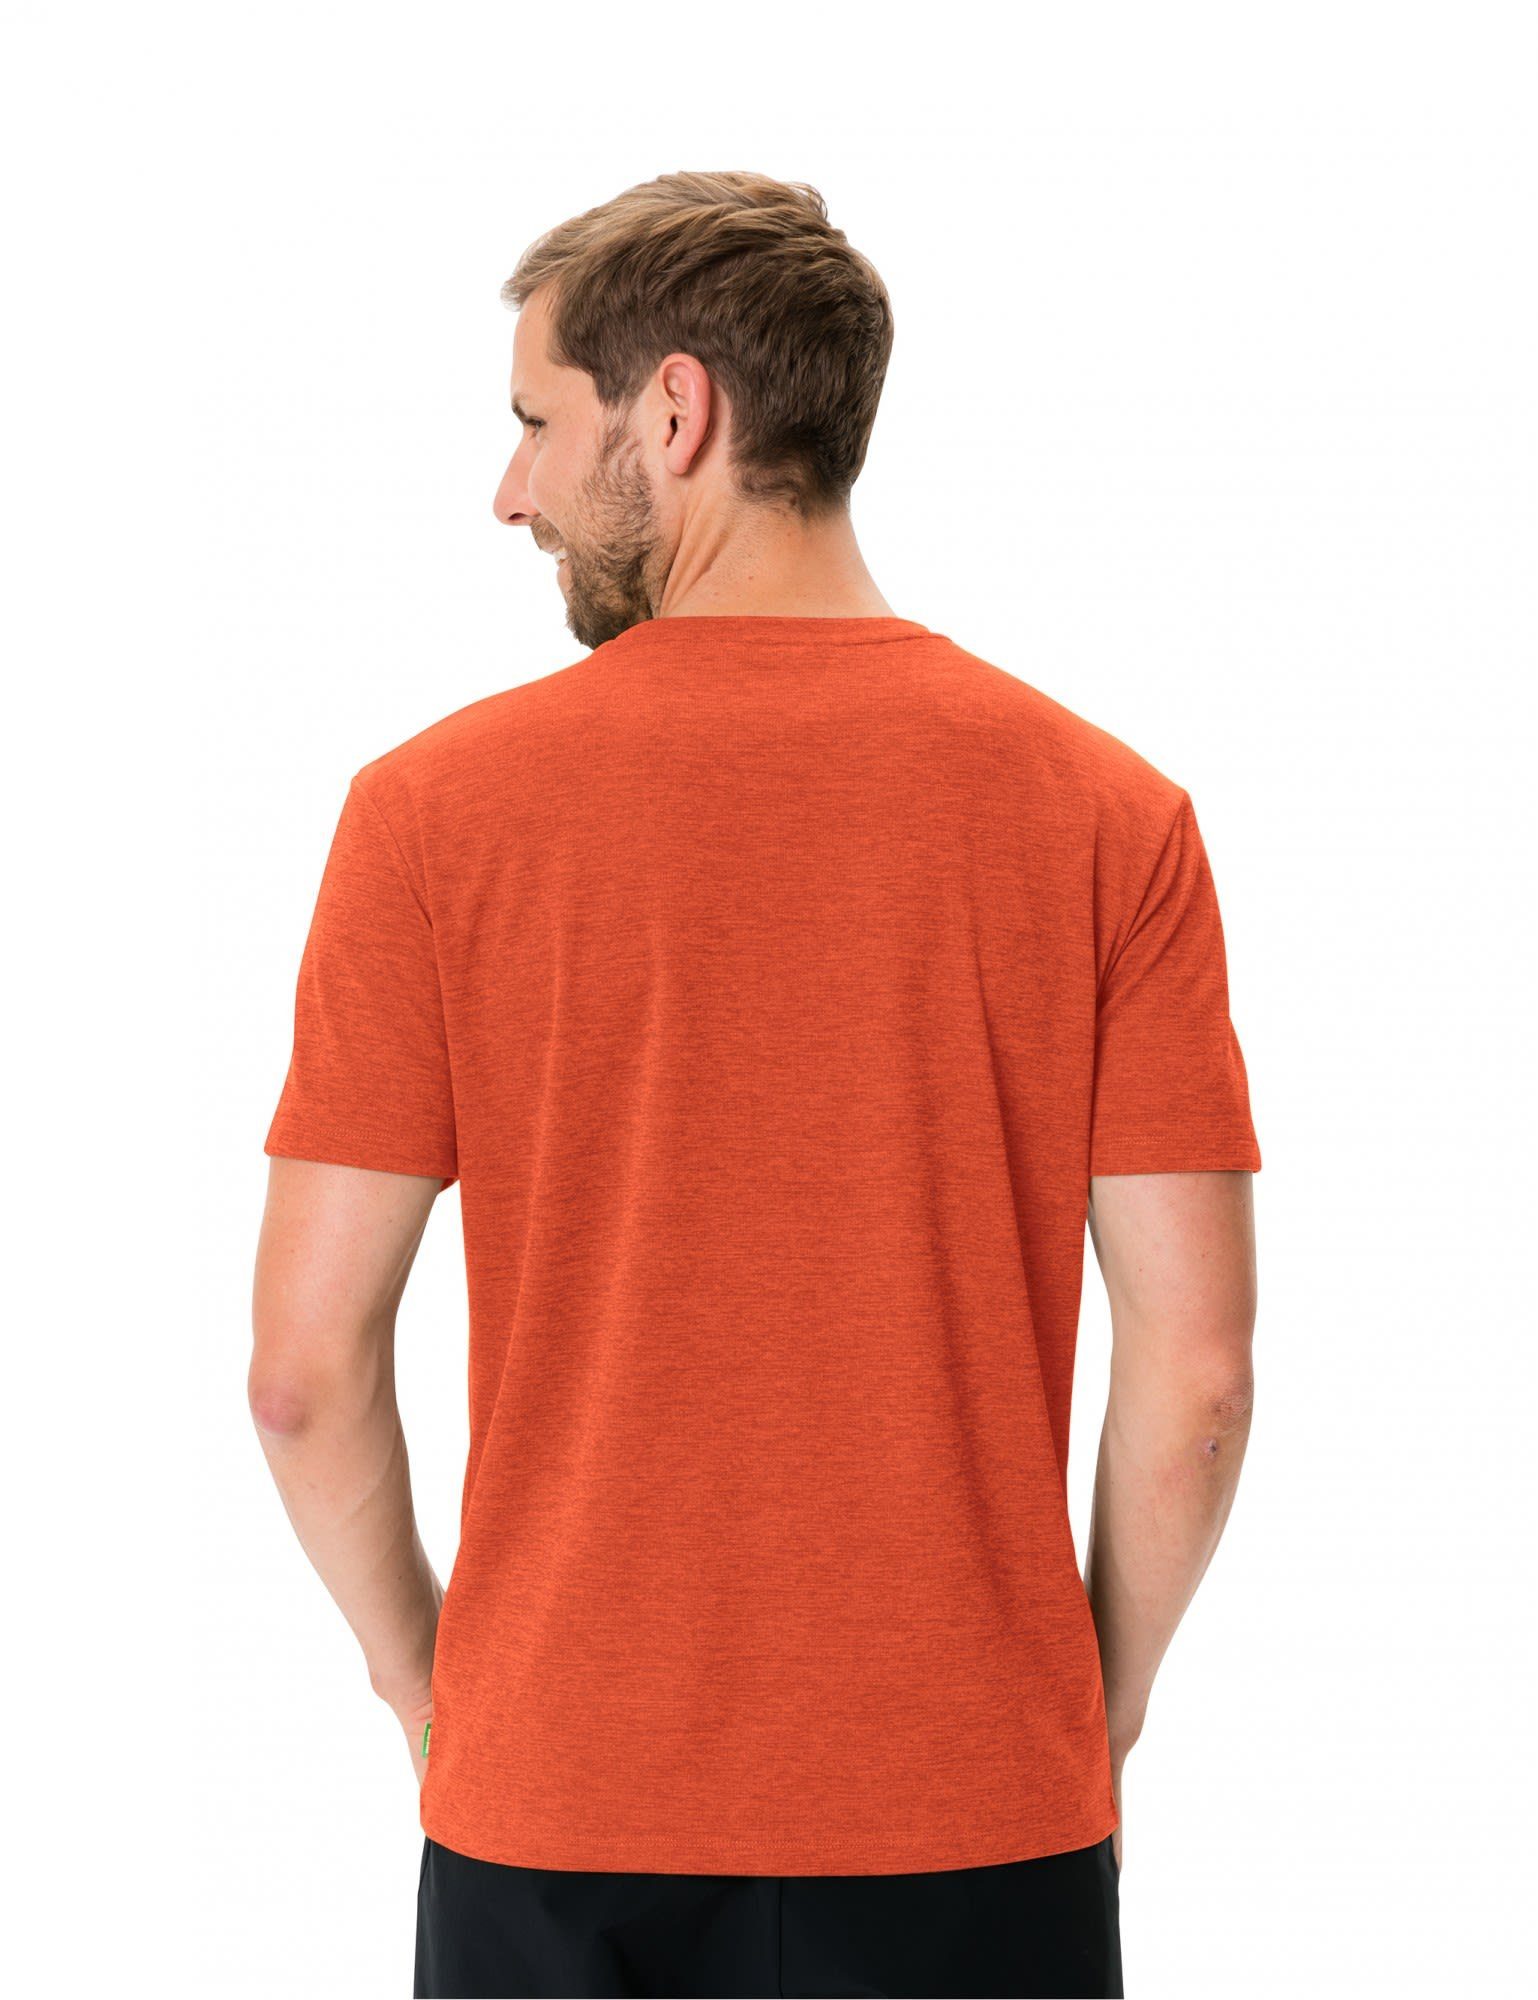 Mens Herren T-shirt Kurzarm-Shirt Essential Red Glowing VAUDE T-Shirt Vaude